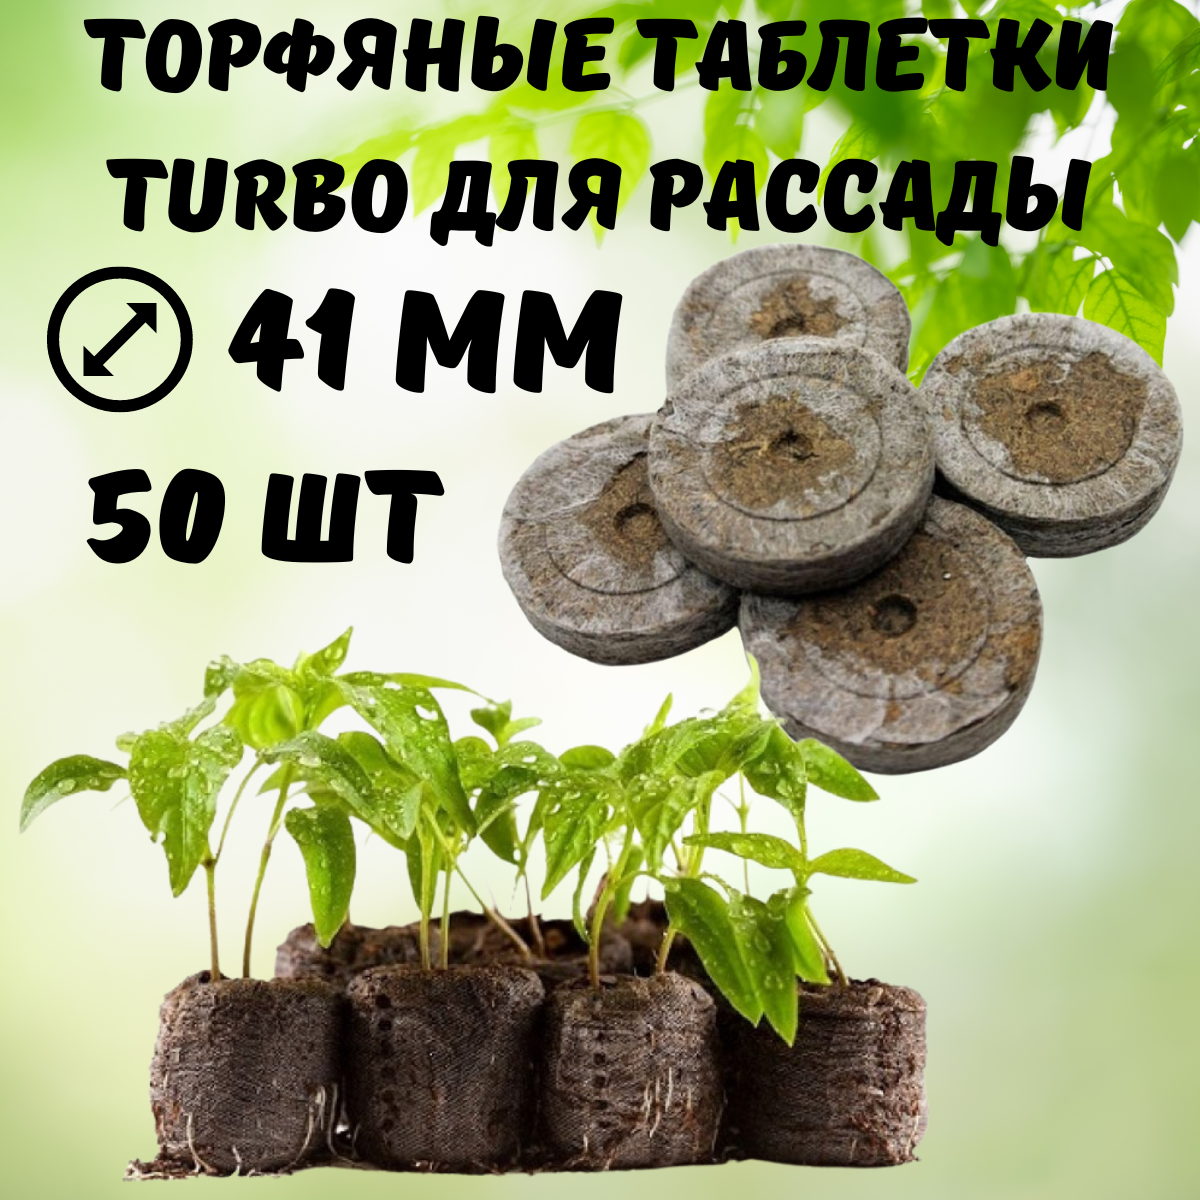 Торфяные таблетки для рассады Turbo 41 мм 50 шт Благодатное земледелие